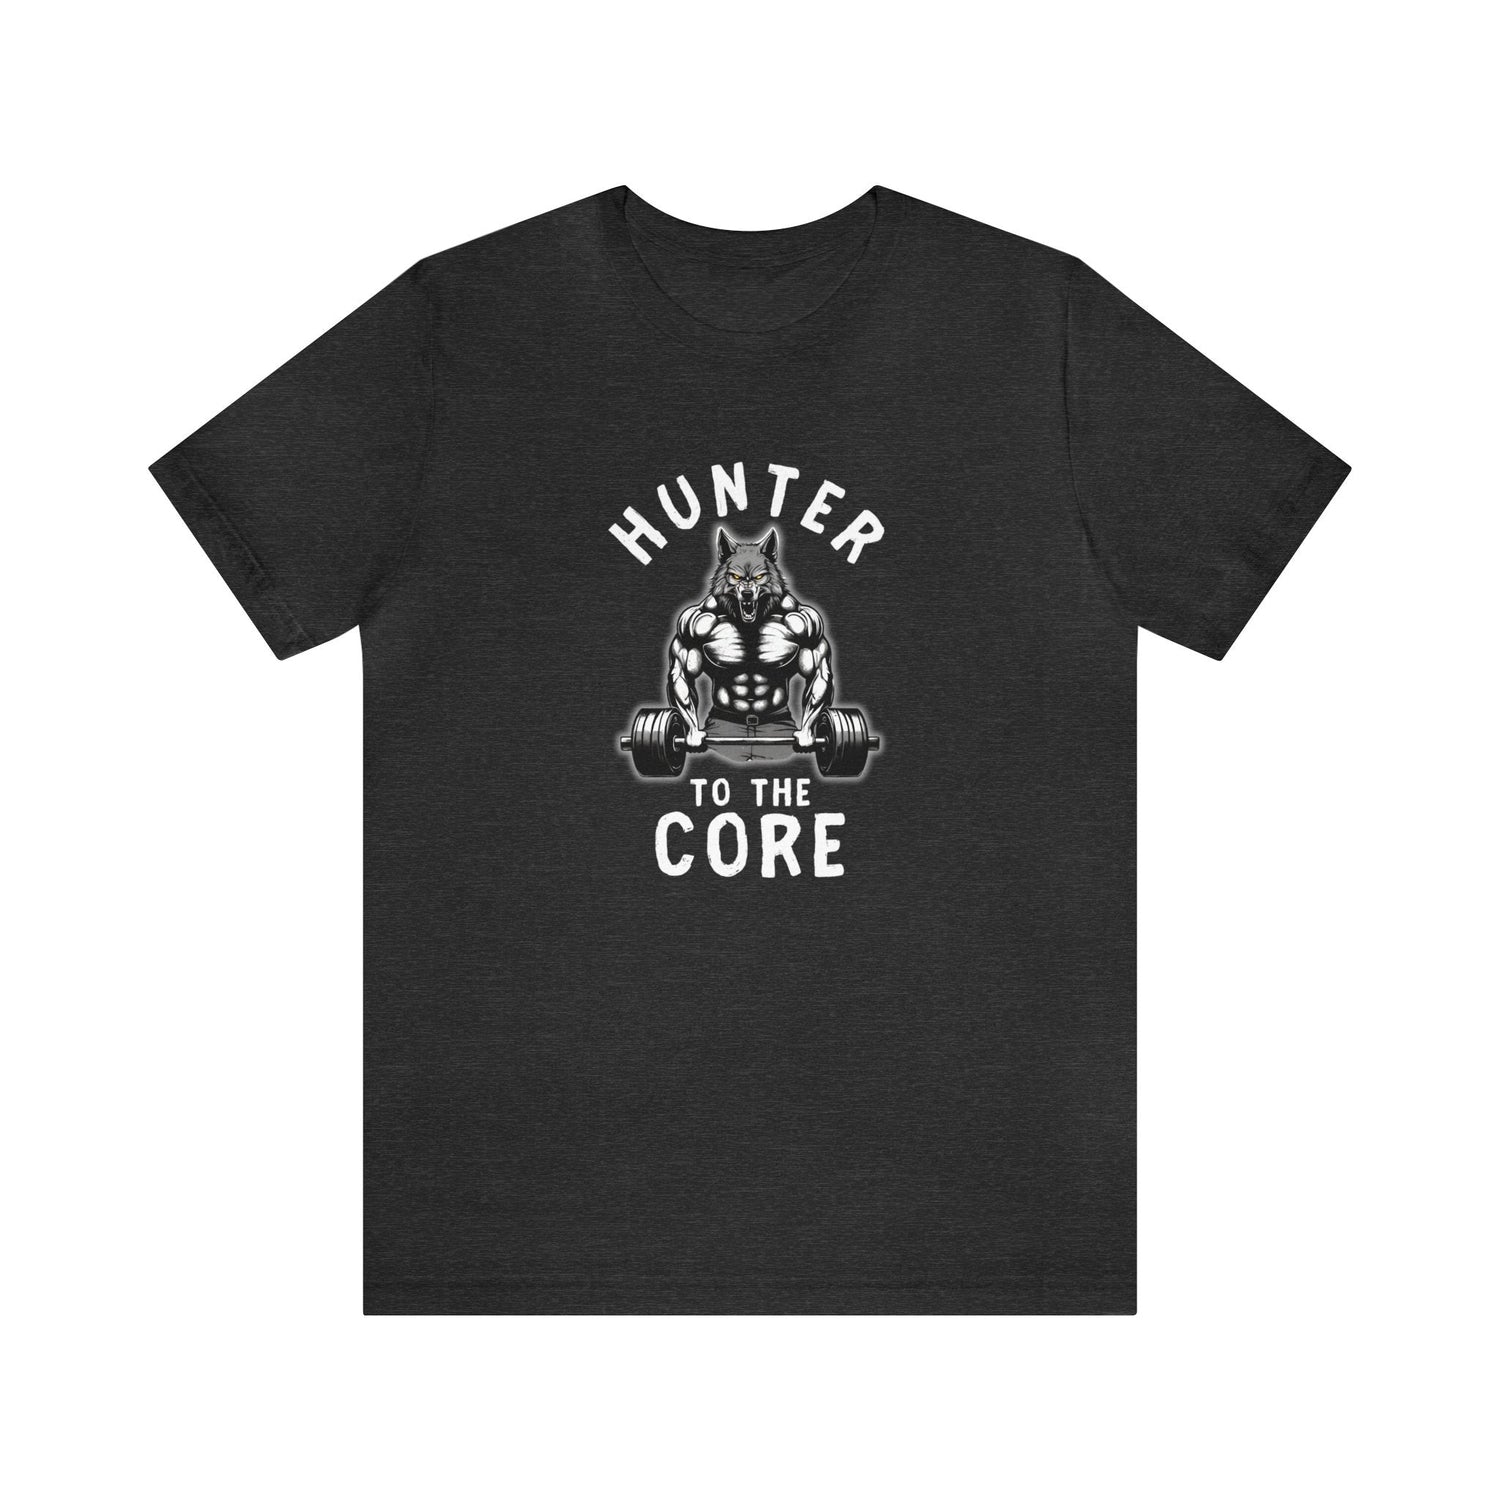 Western deer hunting t-shirt, color dark grey, back design placement